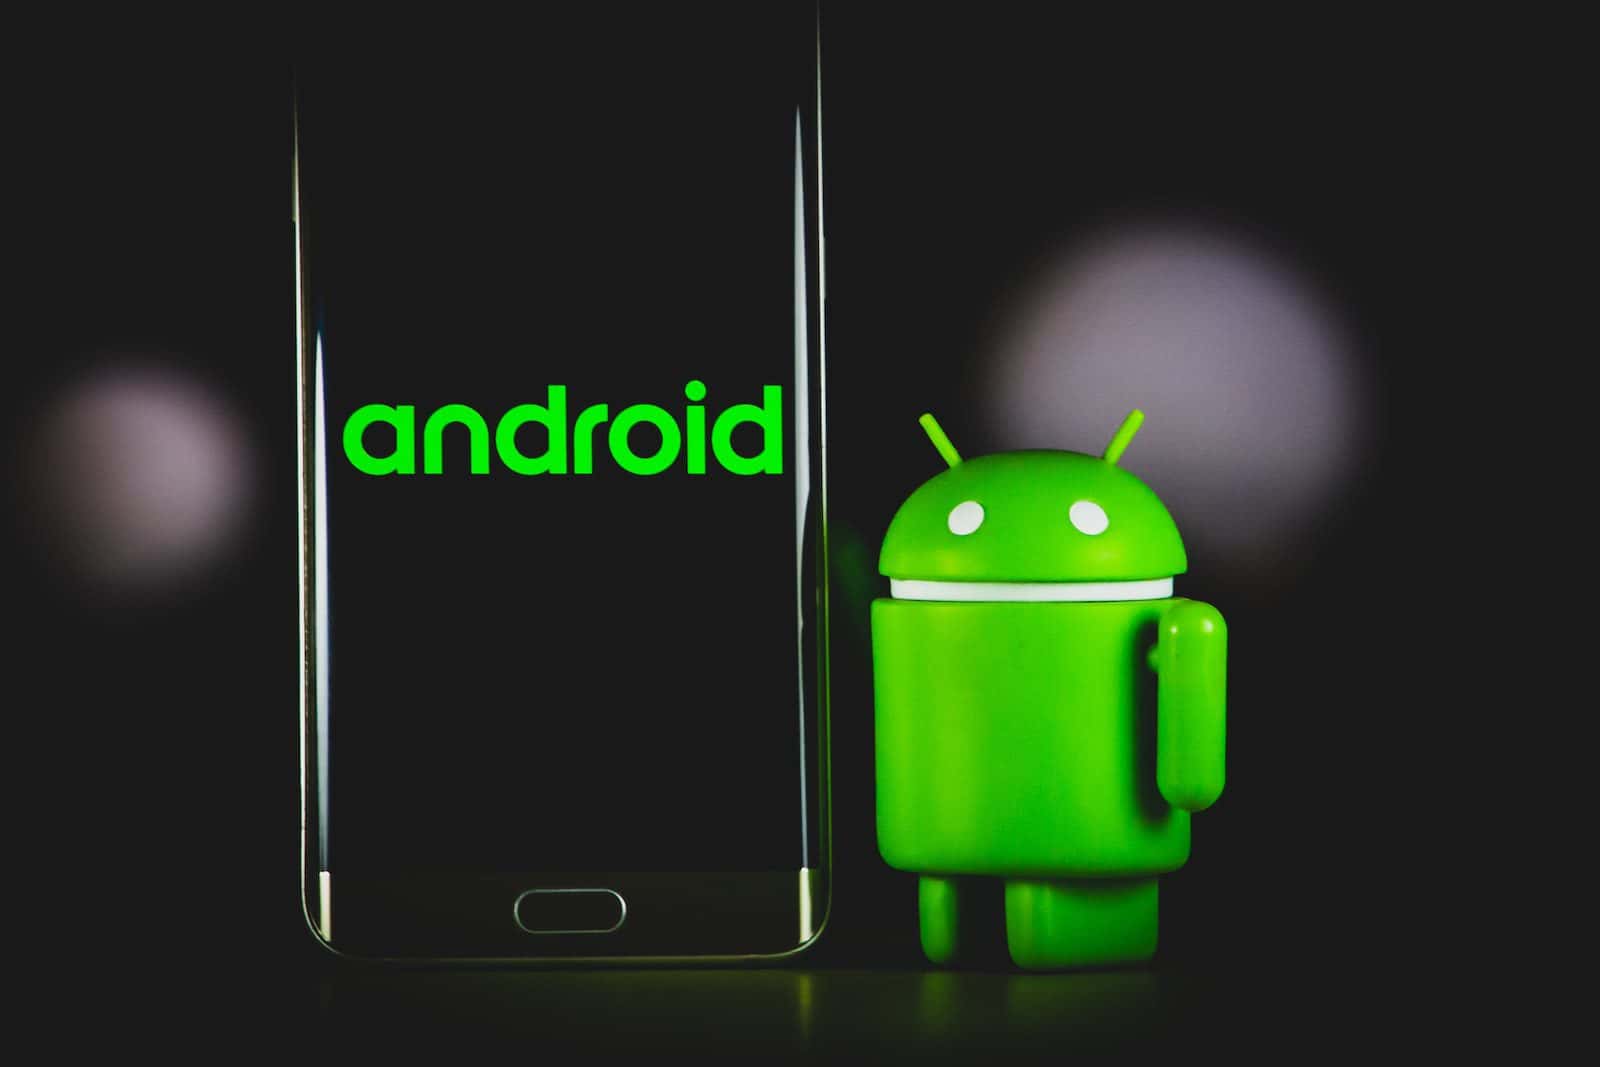 zelená žaba puzdro na iphone vedľa čierneho smartfónu samsung android